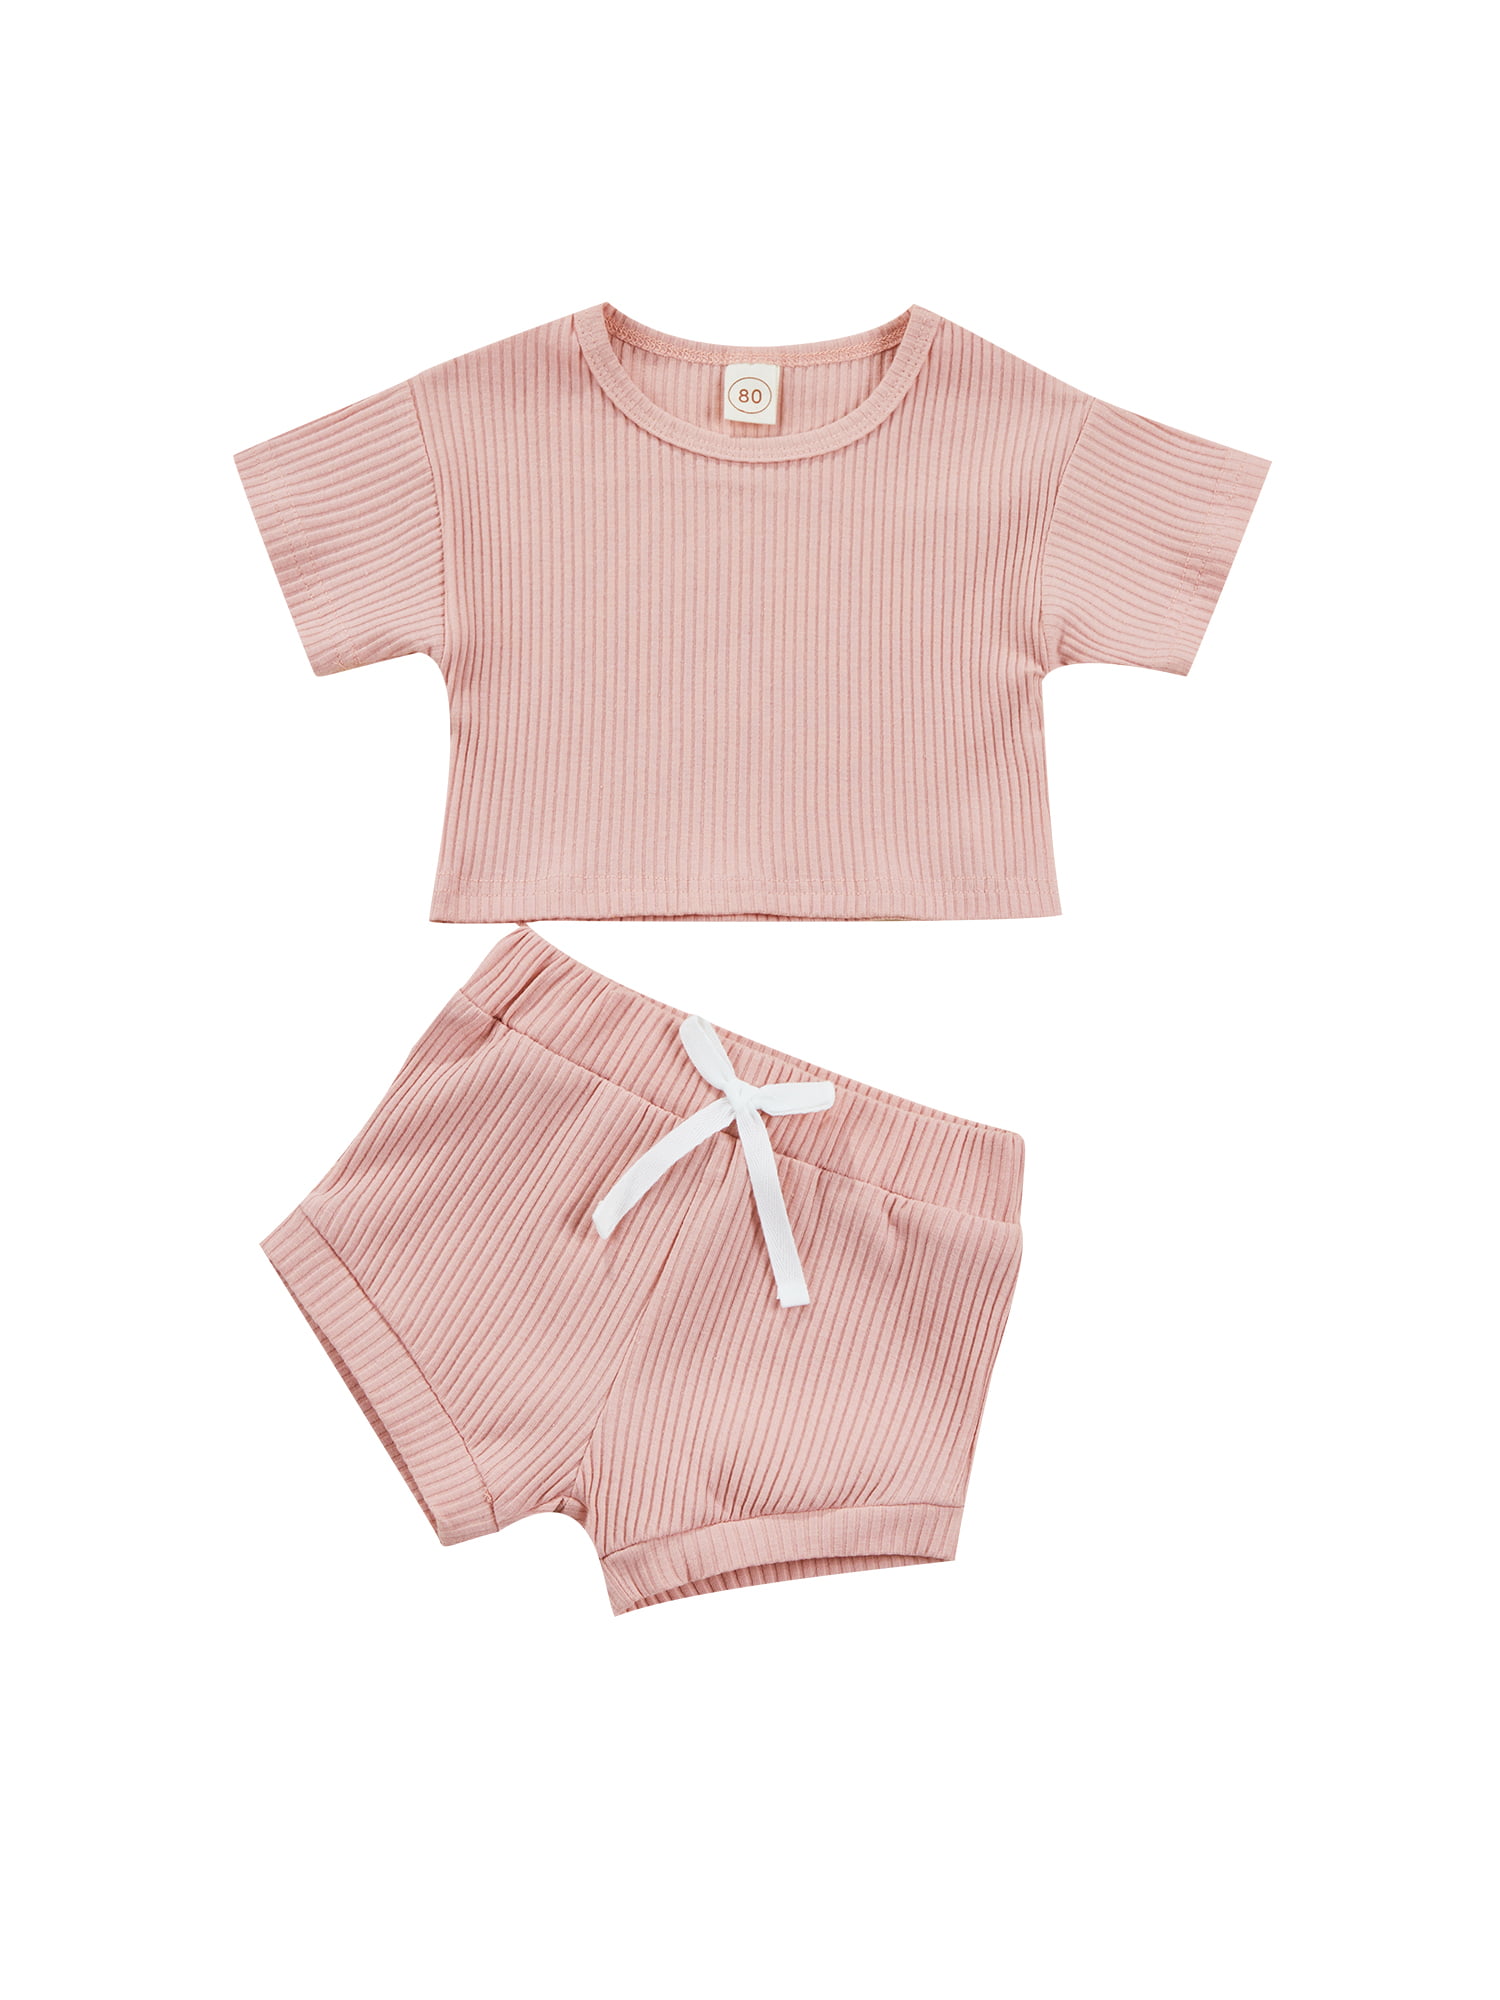 2pcs Baby Girl Solid Ribbed Short-sleeve Tee and Shorts Set